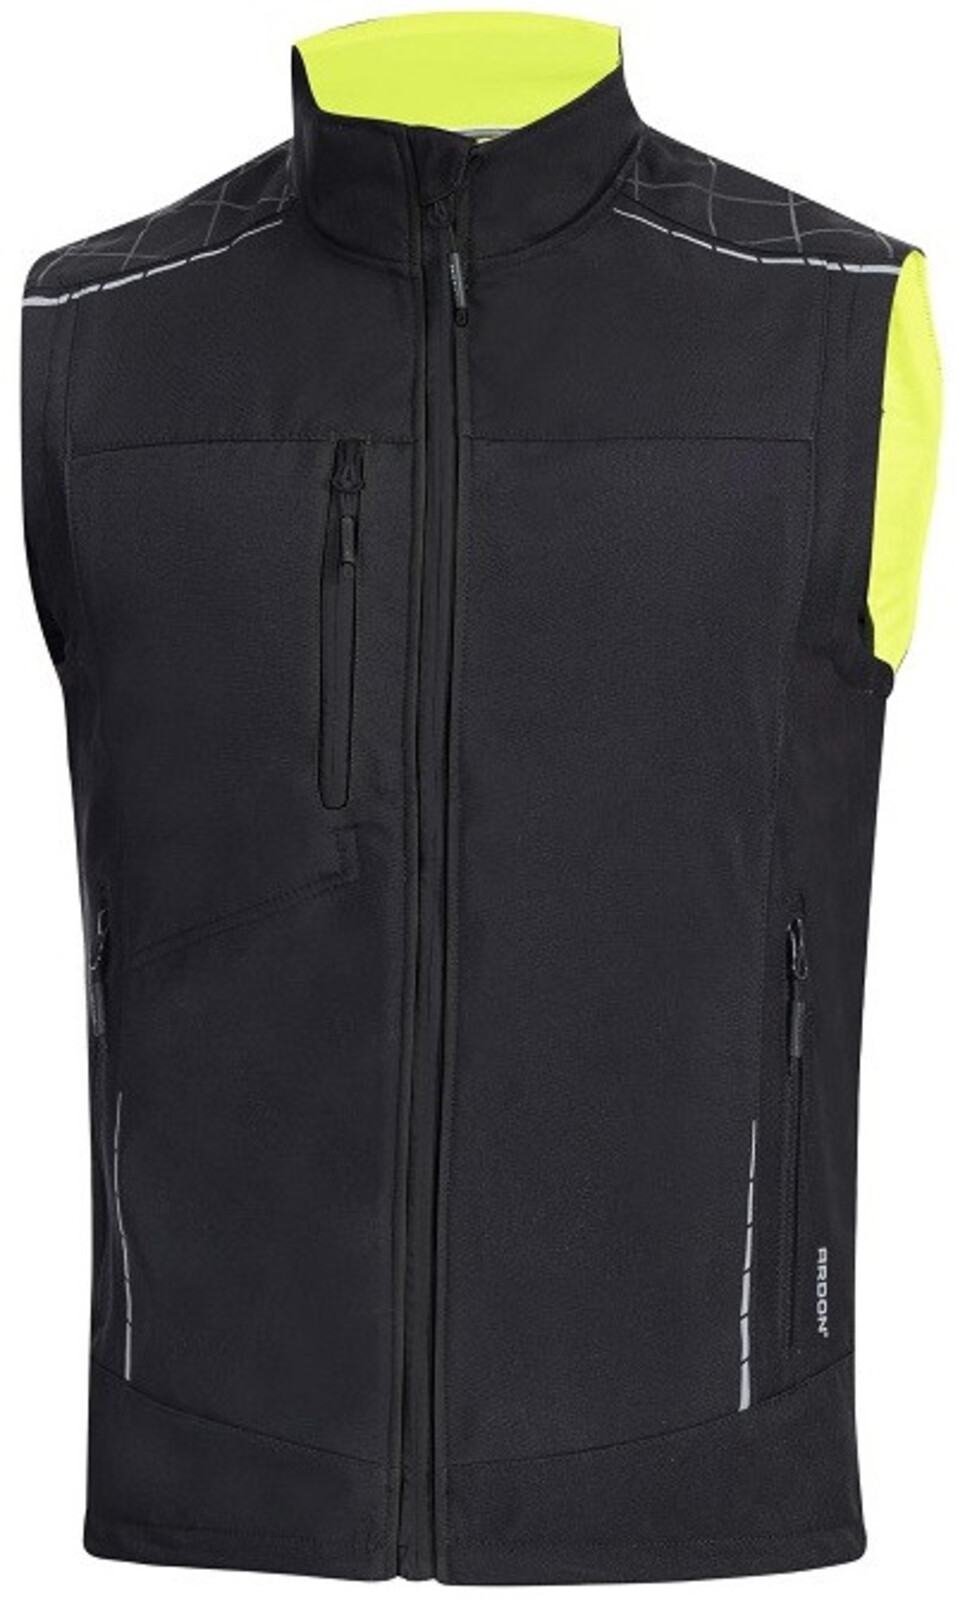 Pánska zimná softshellová vesta Ardon Vision - veľkosť: XL, farba: čierna/žltá